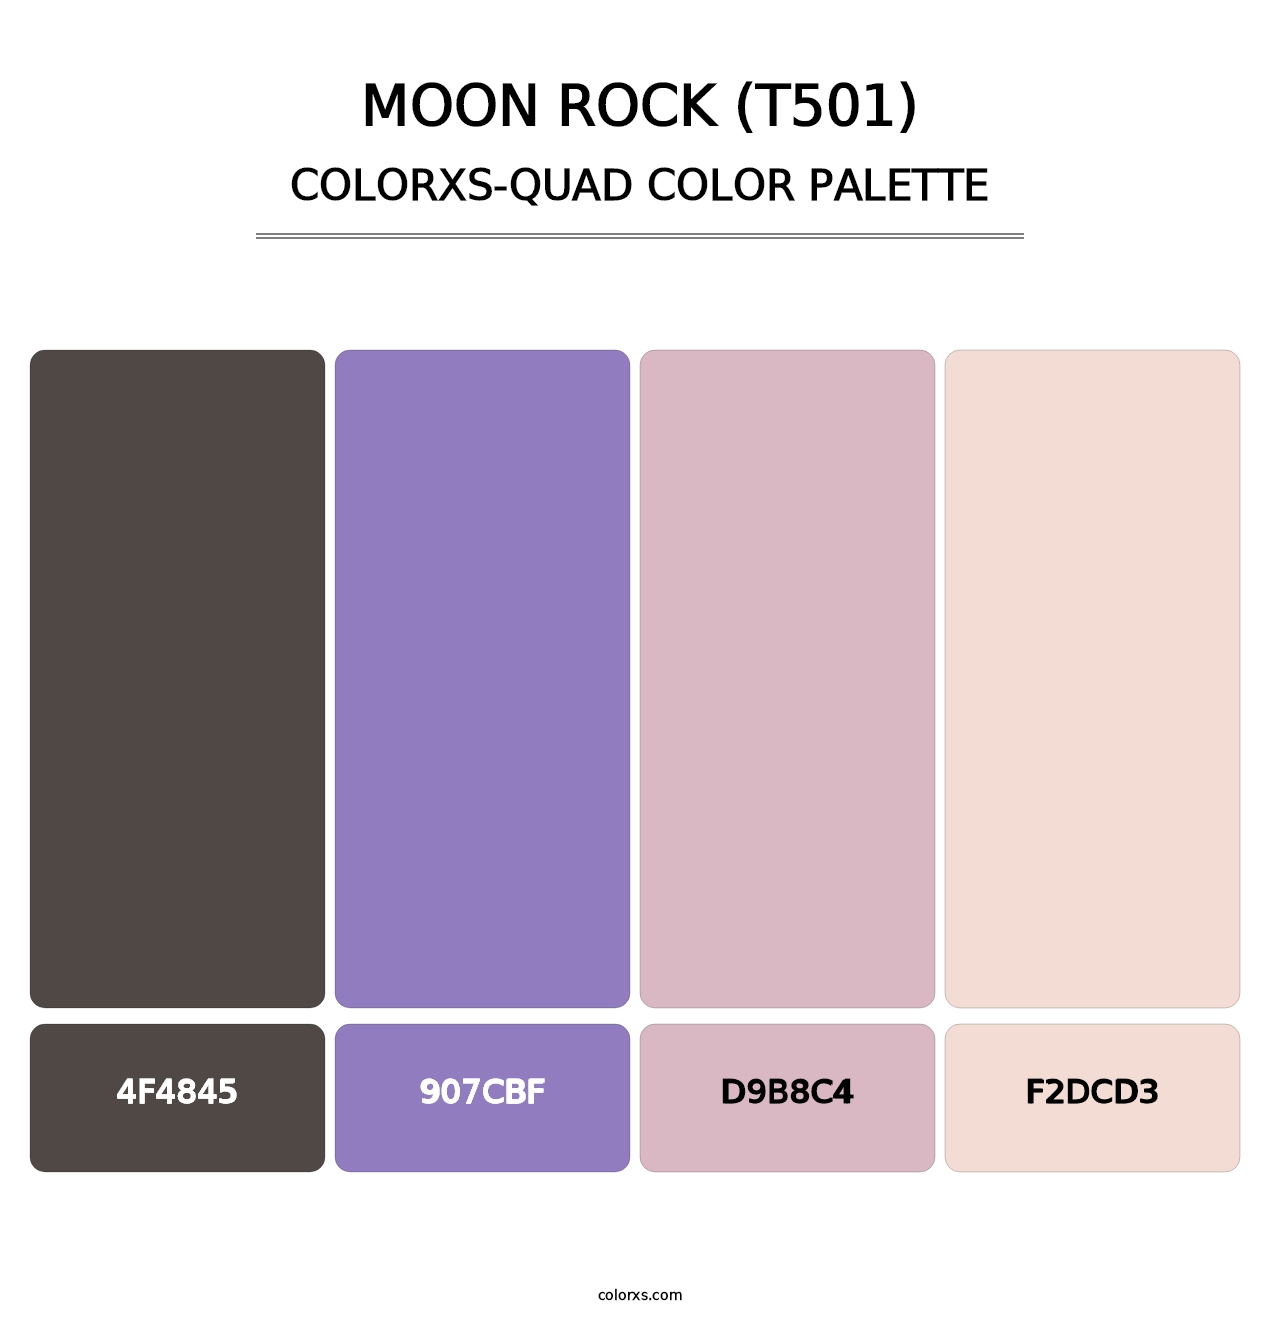 Moon Rock (T501) - Colorxs Quad Palette